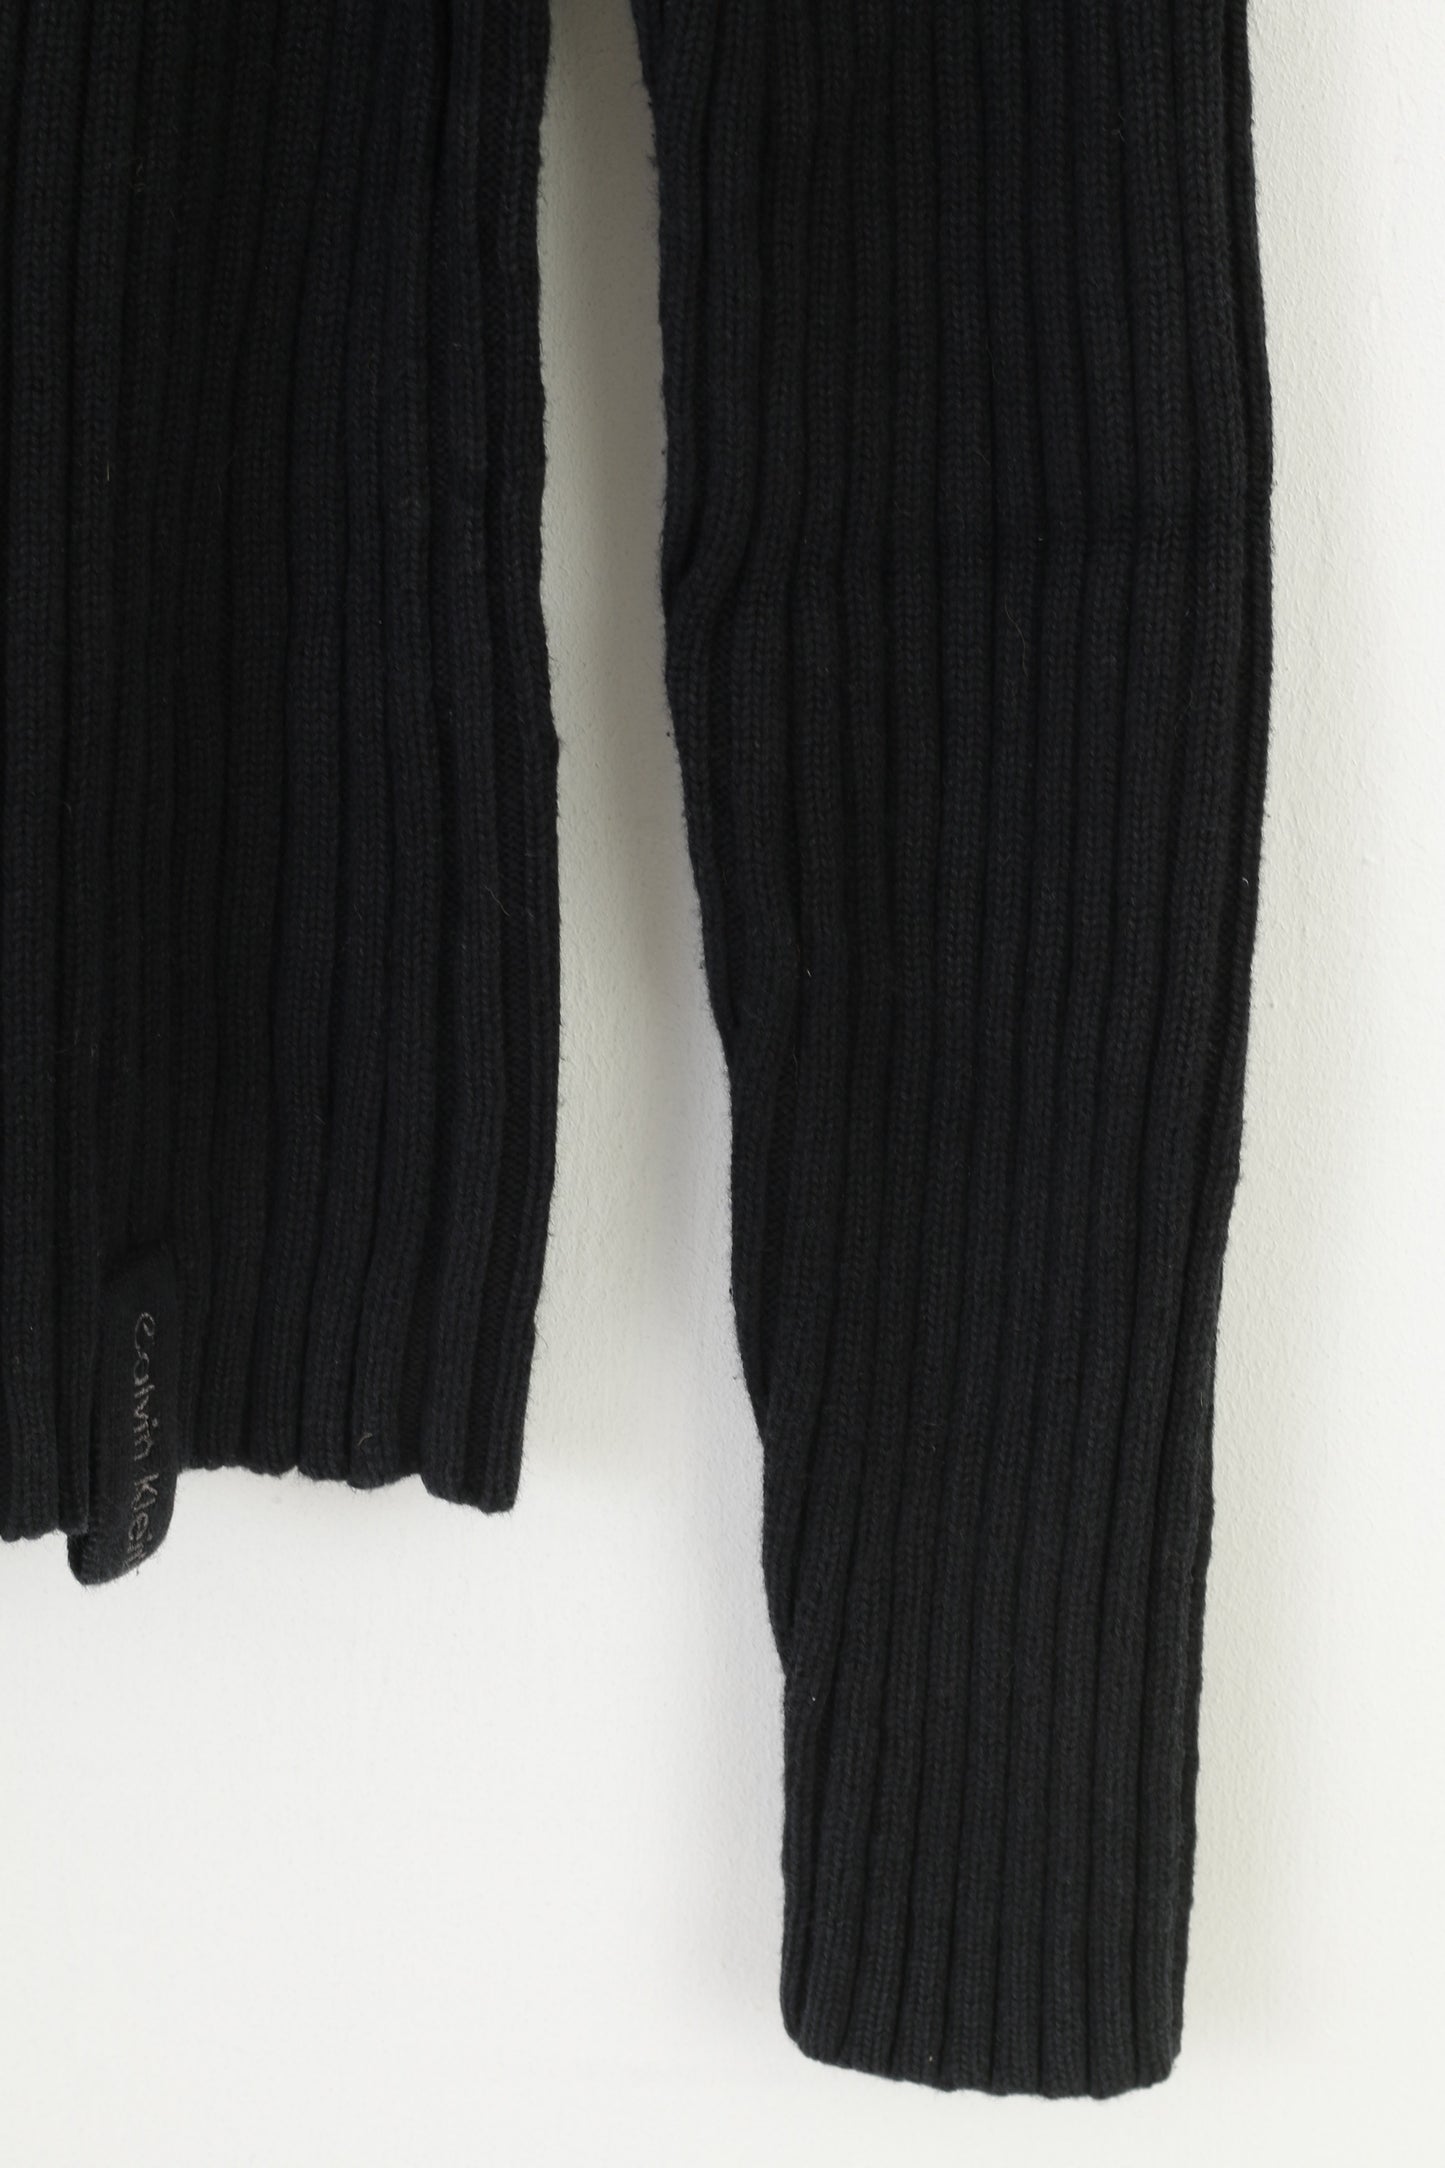 Calvin Klein Jeans Femmes M Jumper Noir Coton Rayé Fermeture Éclair Complète Stretch Pull Vintage Top